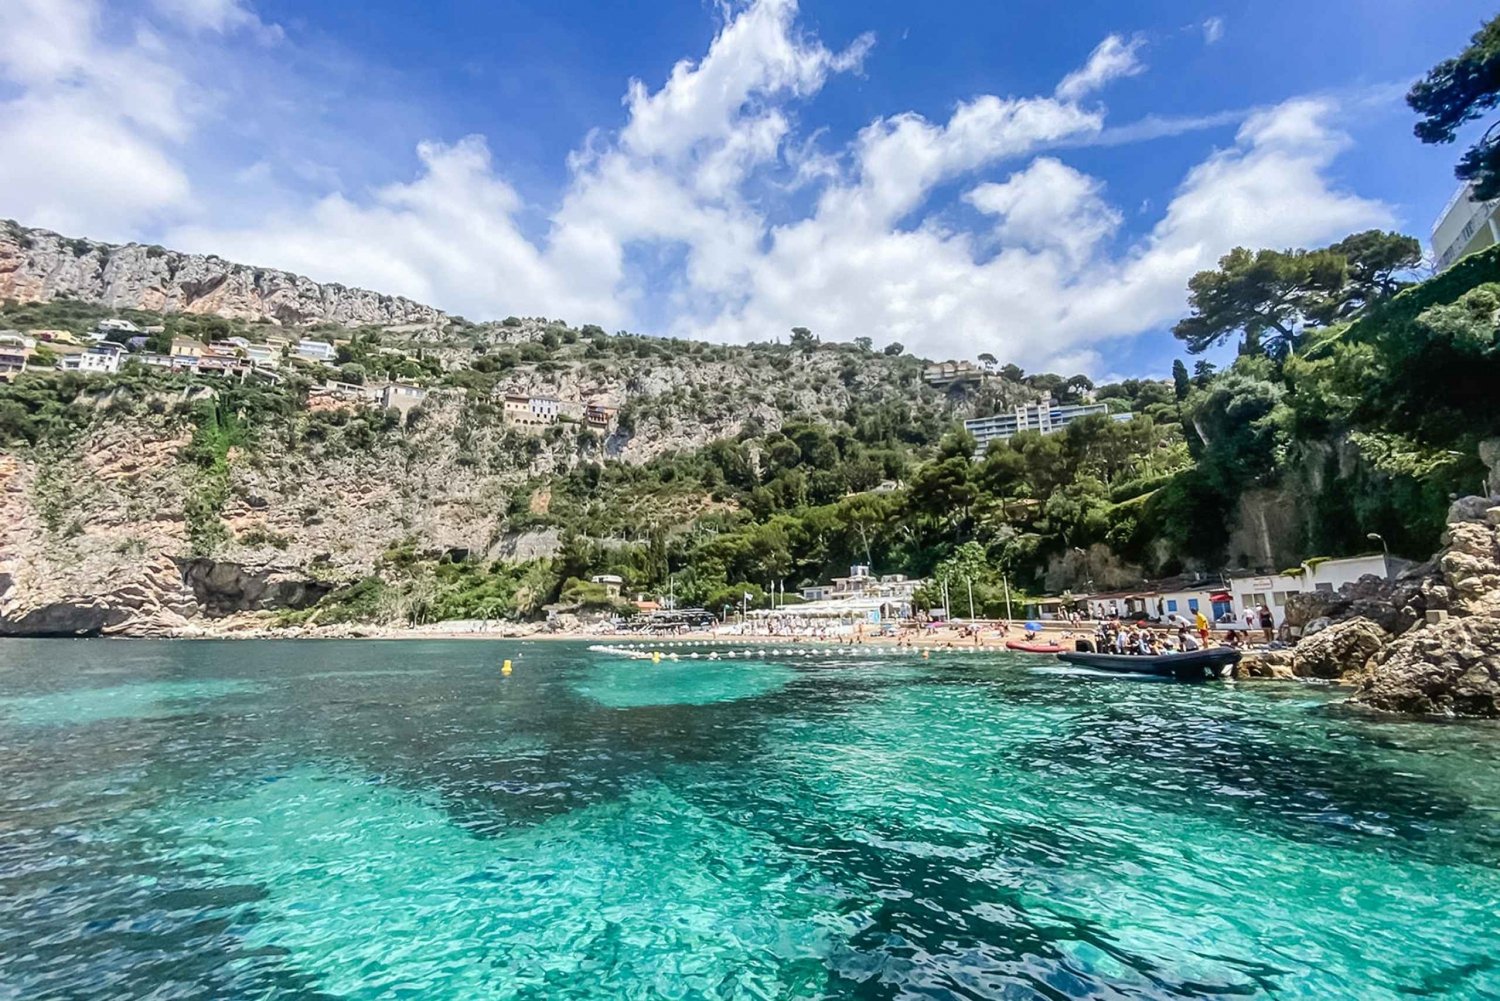 Trevligt att träffas: Båtkryssning längs kusten till Monaco